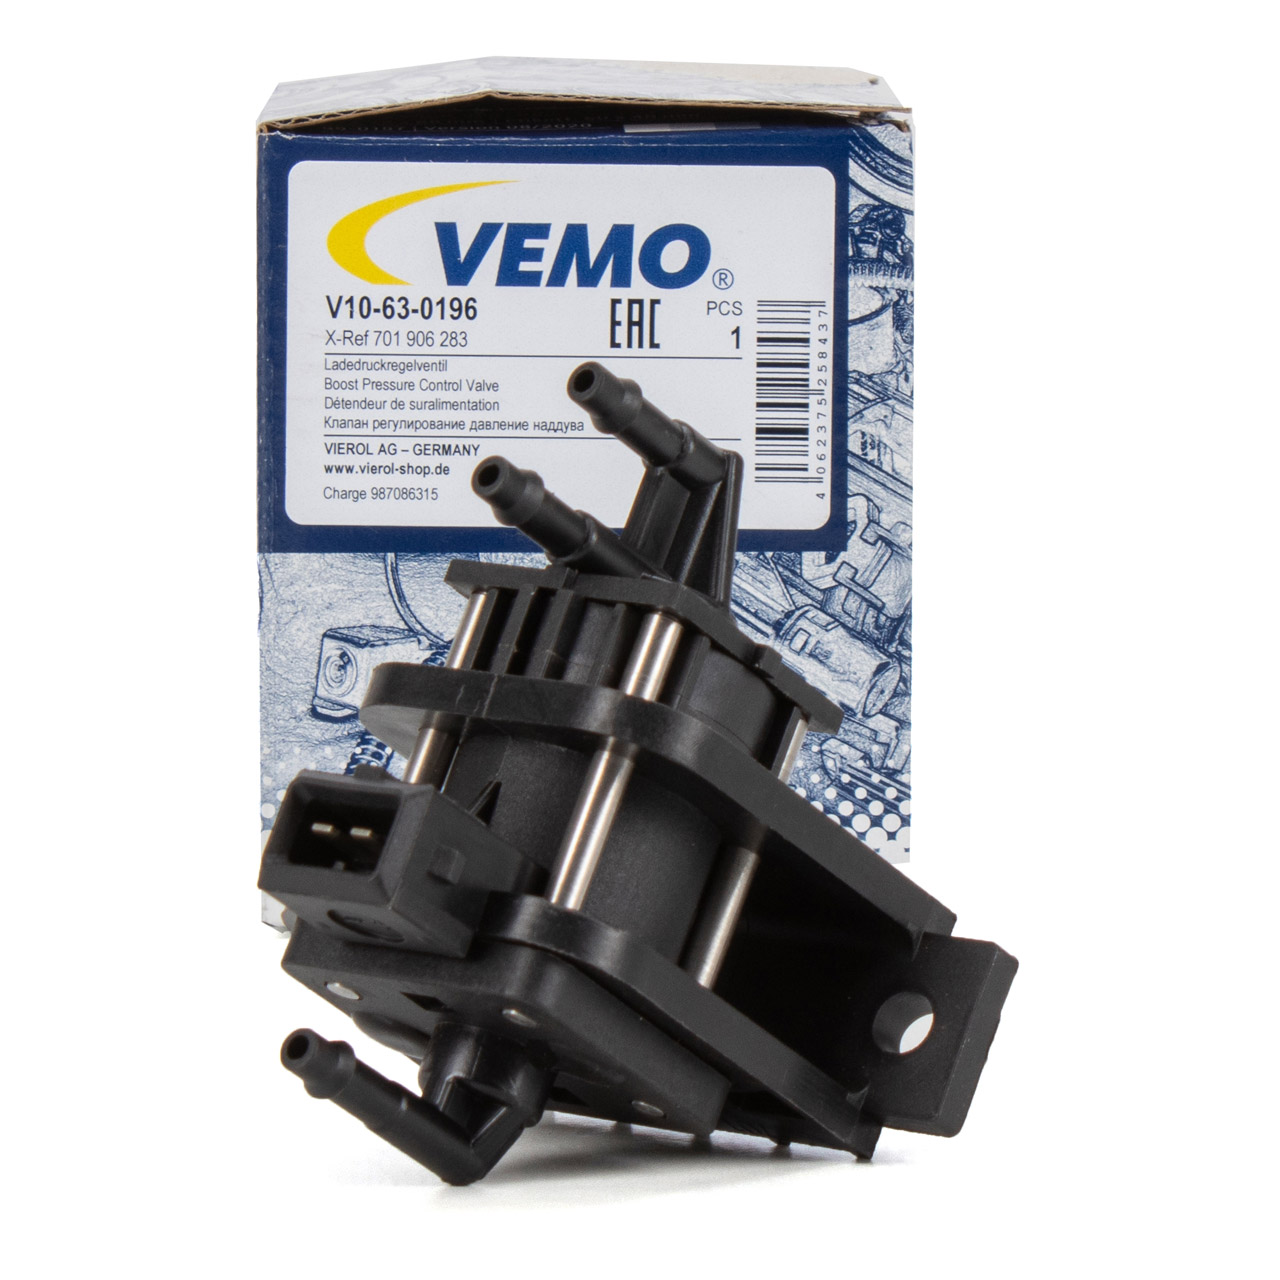 VEMO V10630196 Ladedruckregelventil VW Transporter T4 LT 28-35 2 28-46 2 2.5 TDI 701906283